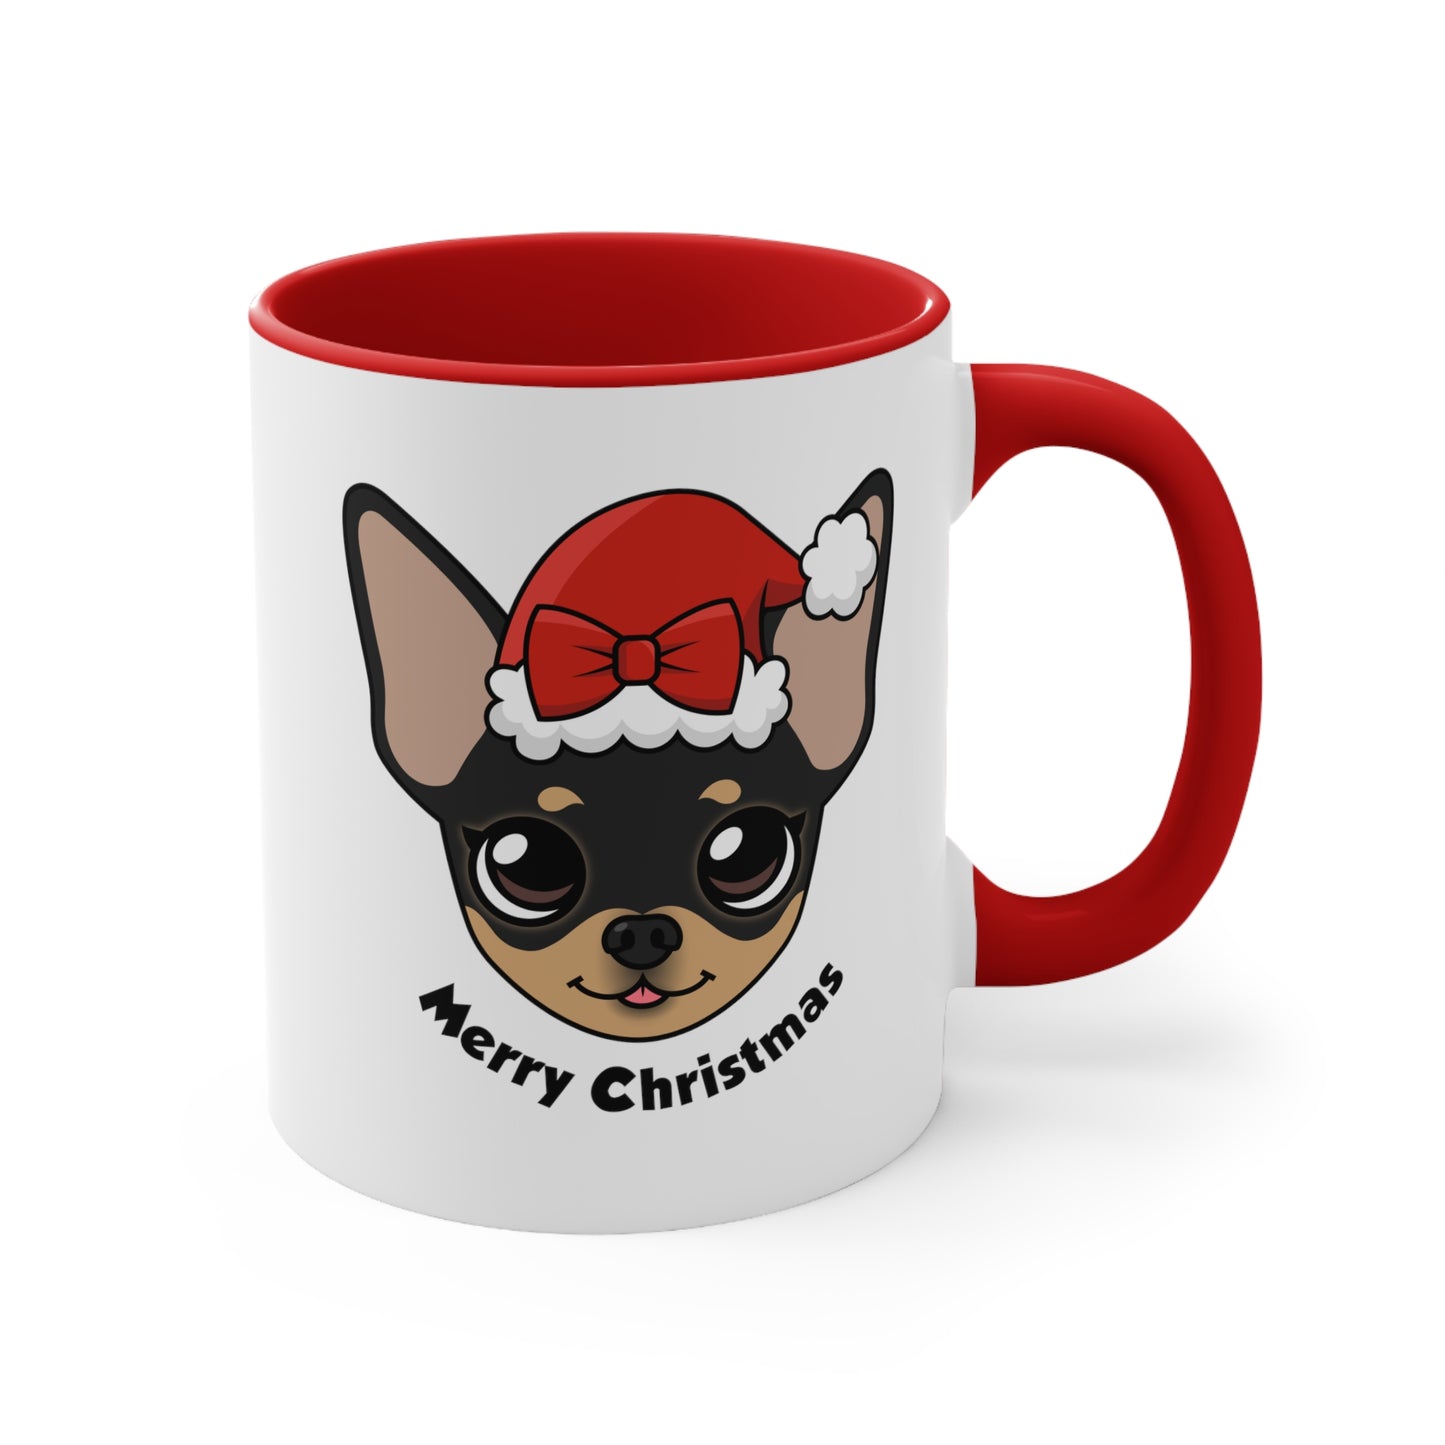 Maya's Merry Christmas Mug